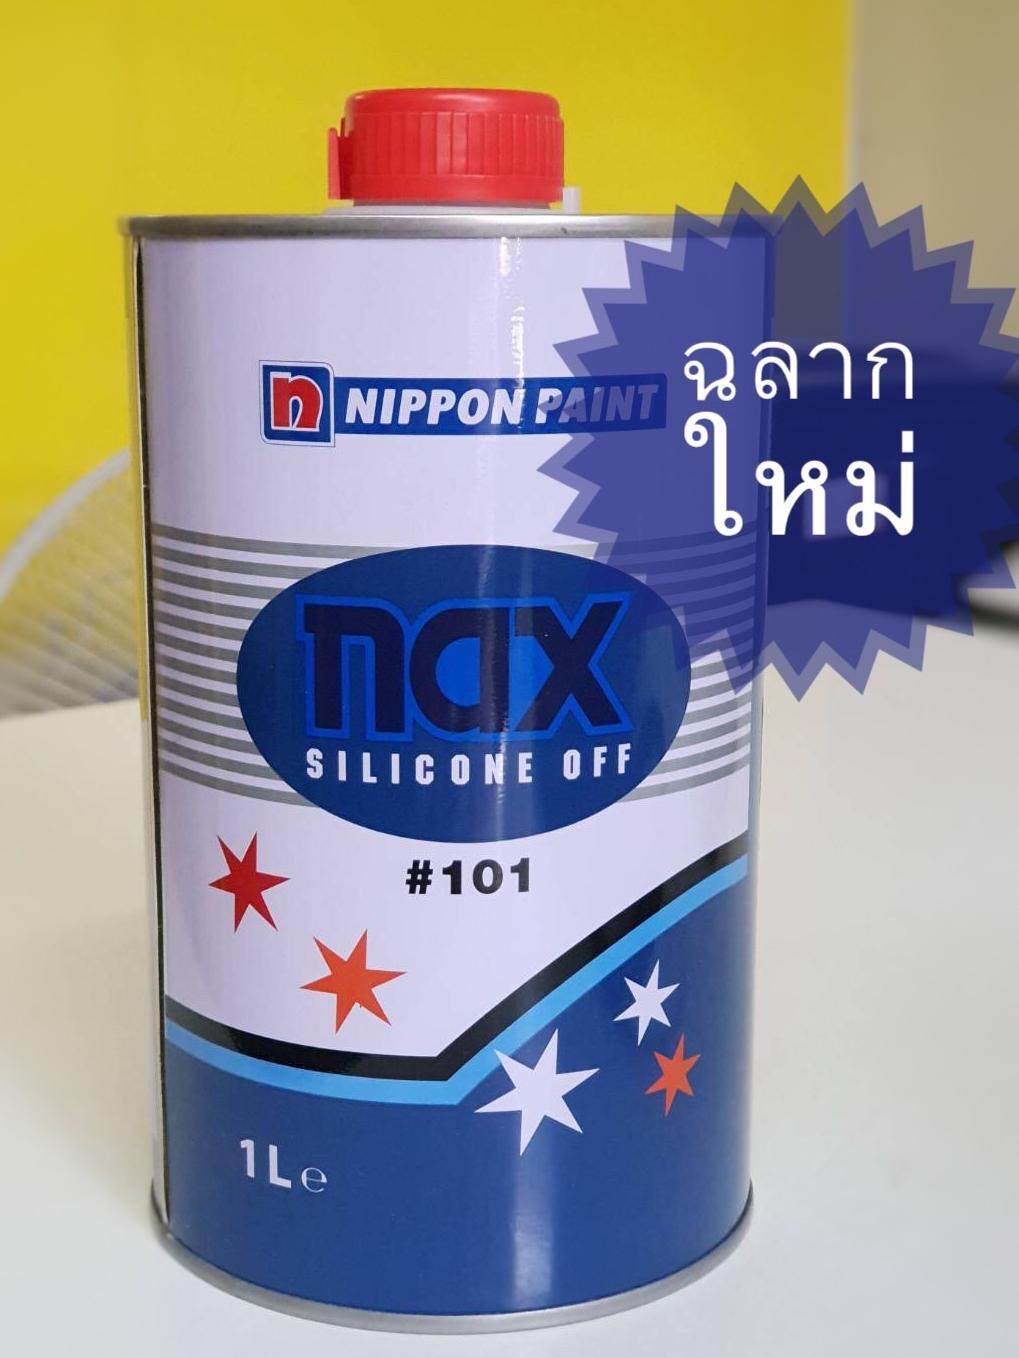 Nax silicon off 101 แนกซ์ ซิลิโคน อ๊อฟ #101 นำยาเช็ดคราบ ทำความสะอาด 1L